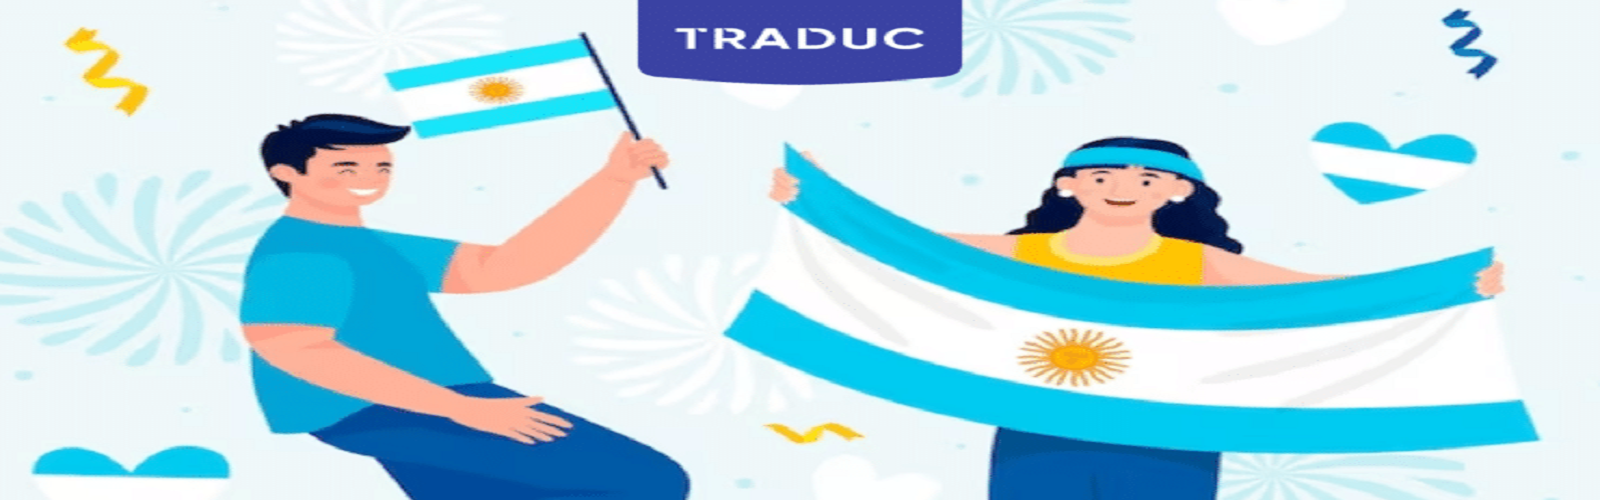 الأرجنتين: برنامج دعم الترجمة "SUR" لسنة 